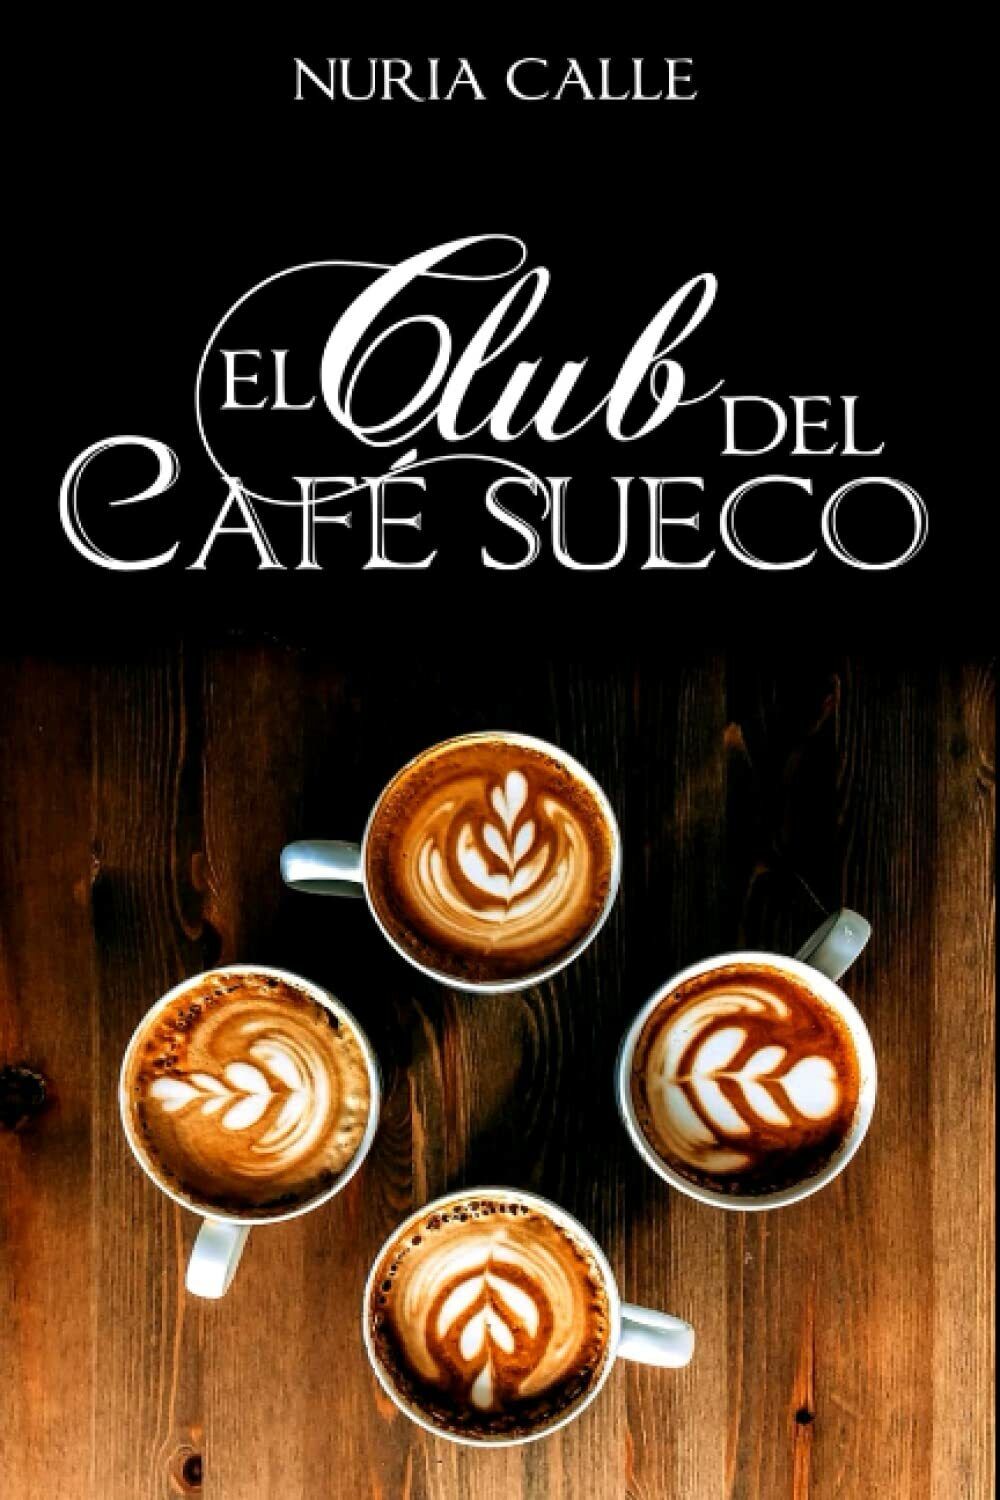 El Club del Caf? sueco di Nuria Calle,  2021,  Indipendently Published